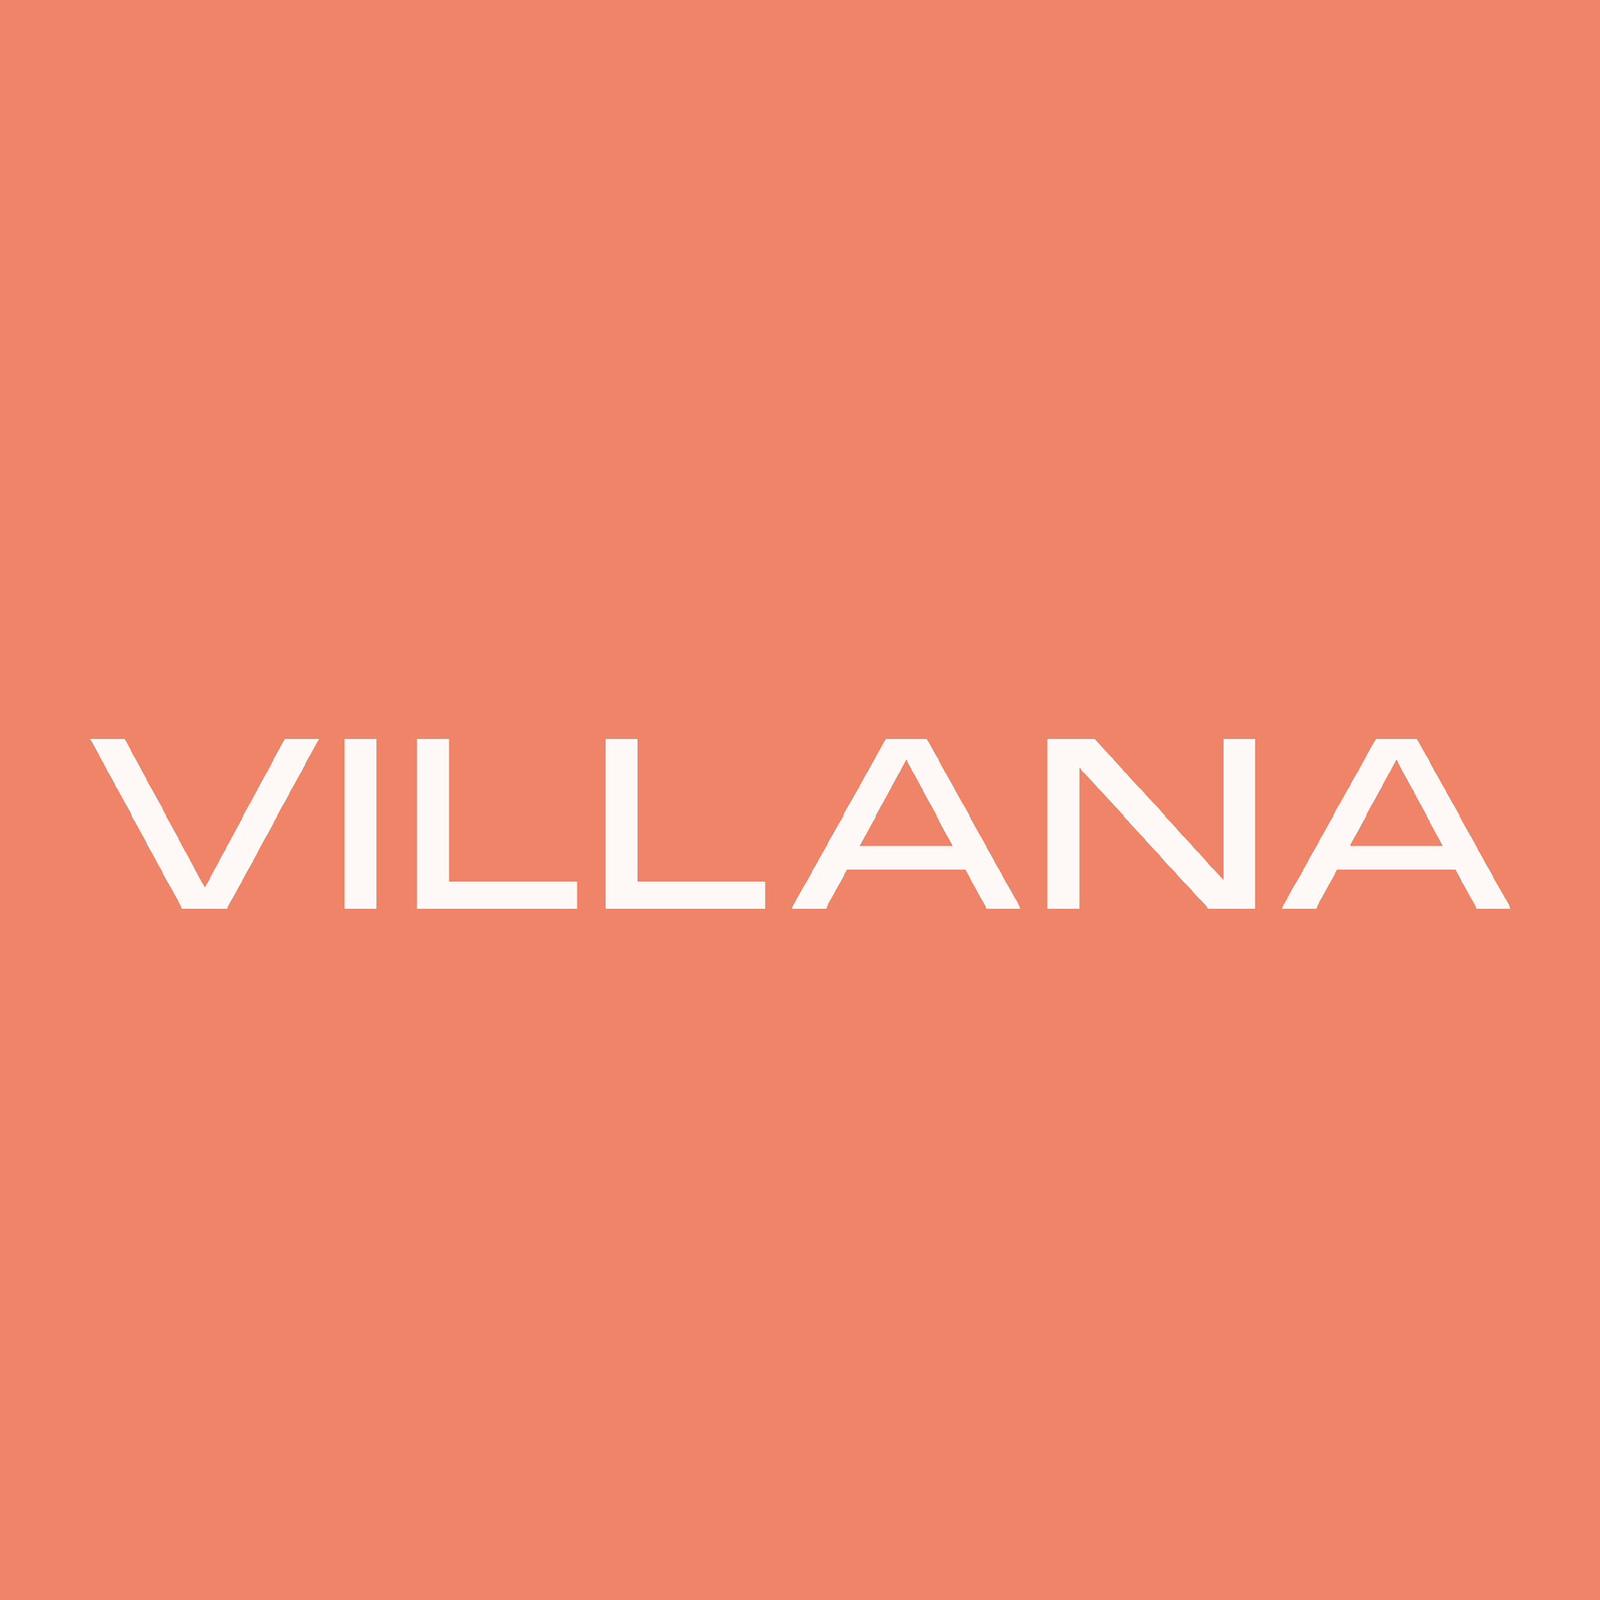 Villana Project"